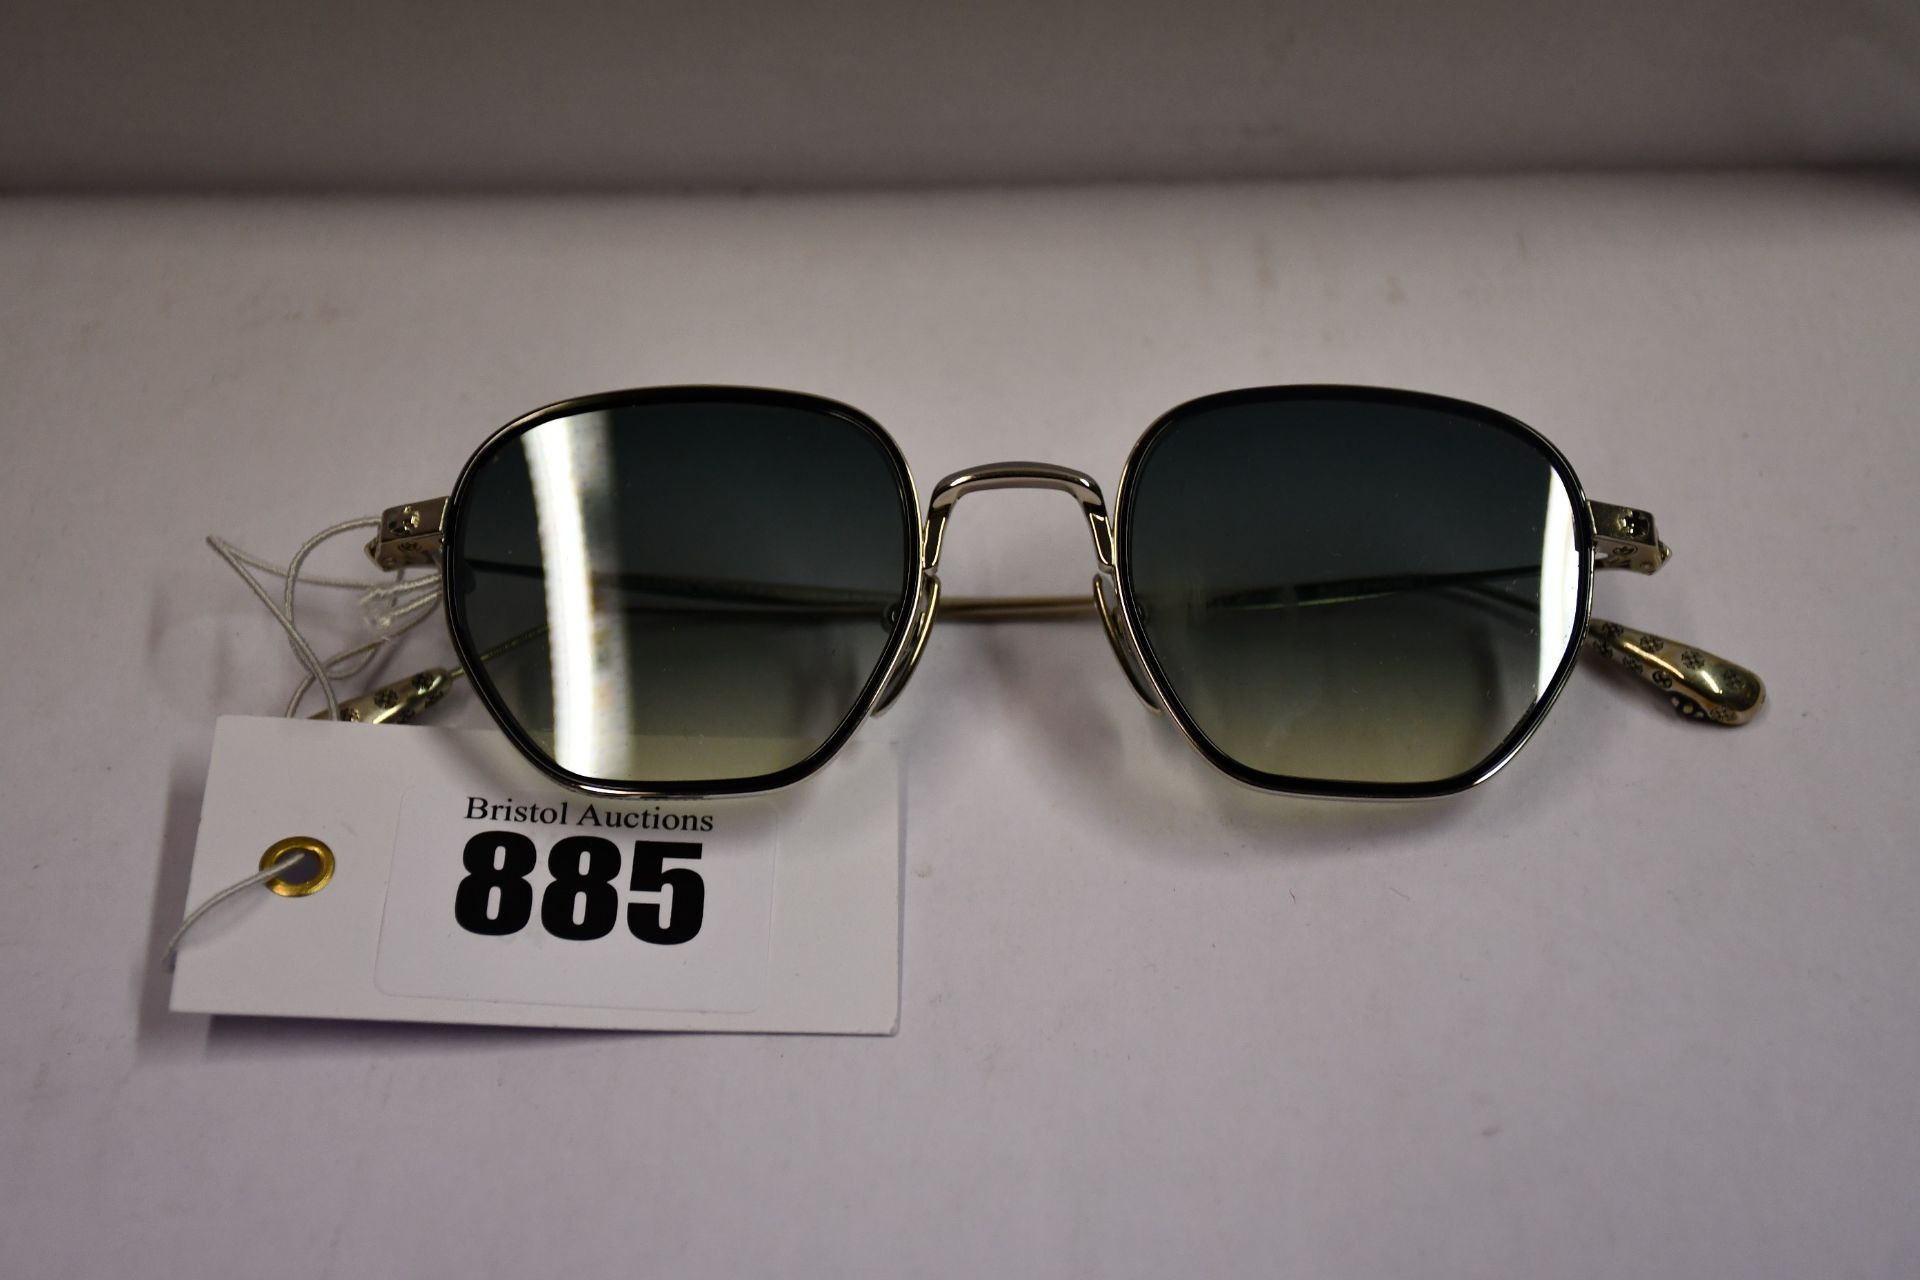 A pair of as new Chrome Hearts Bone Prone I sunglasses (No case).